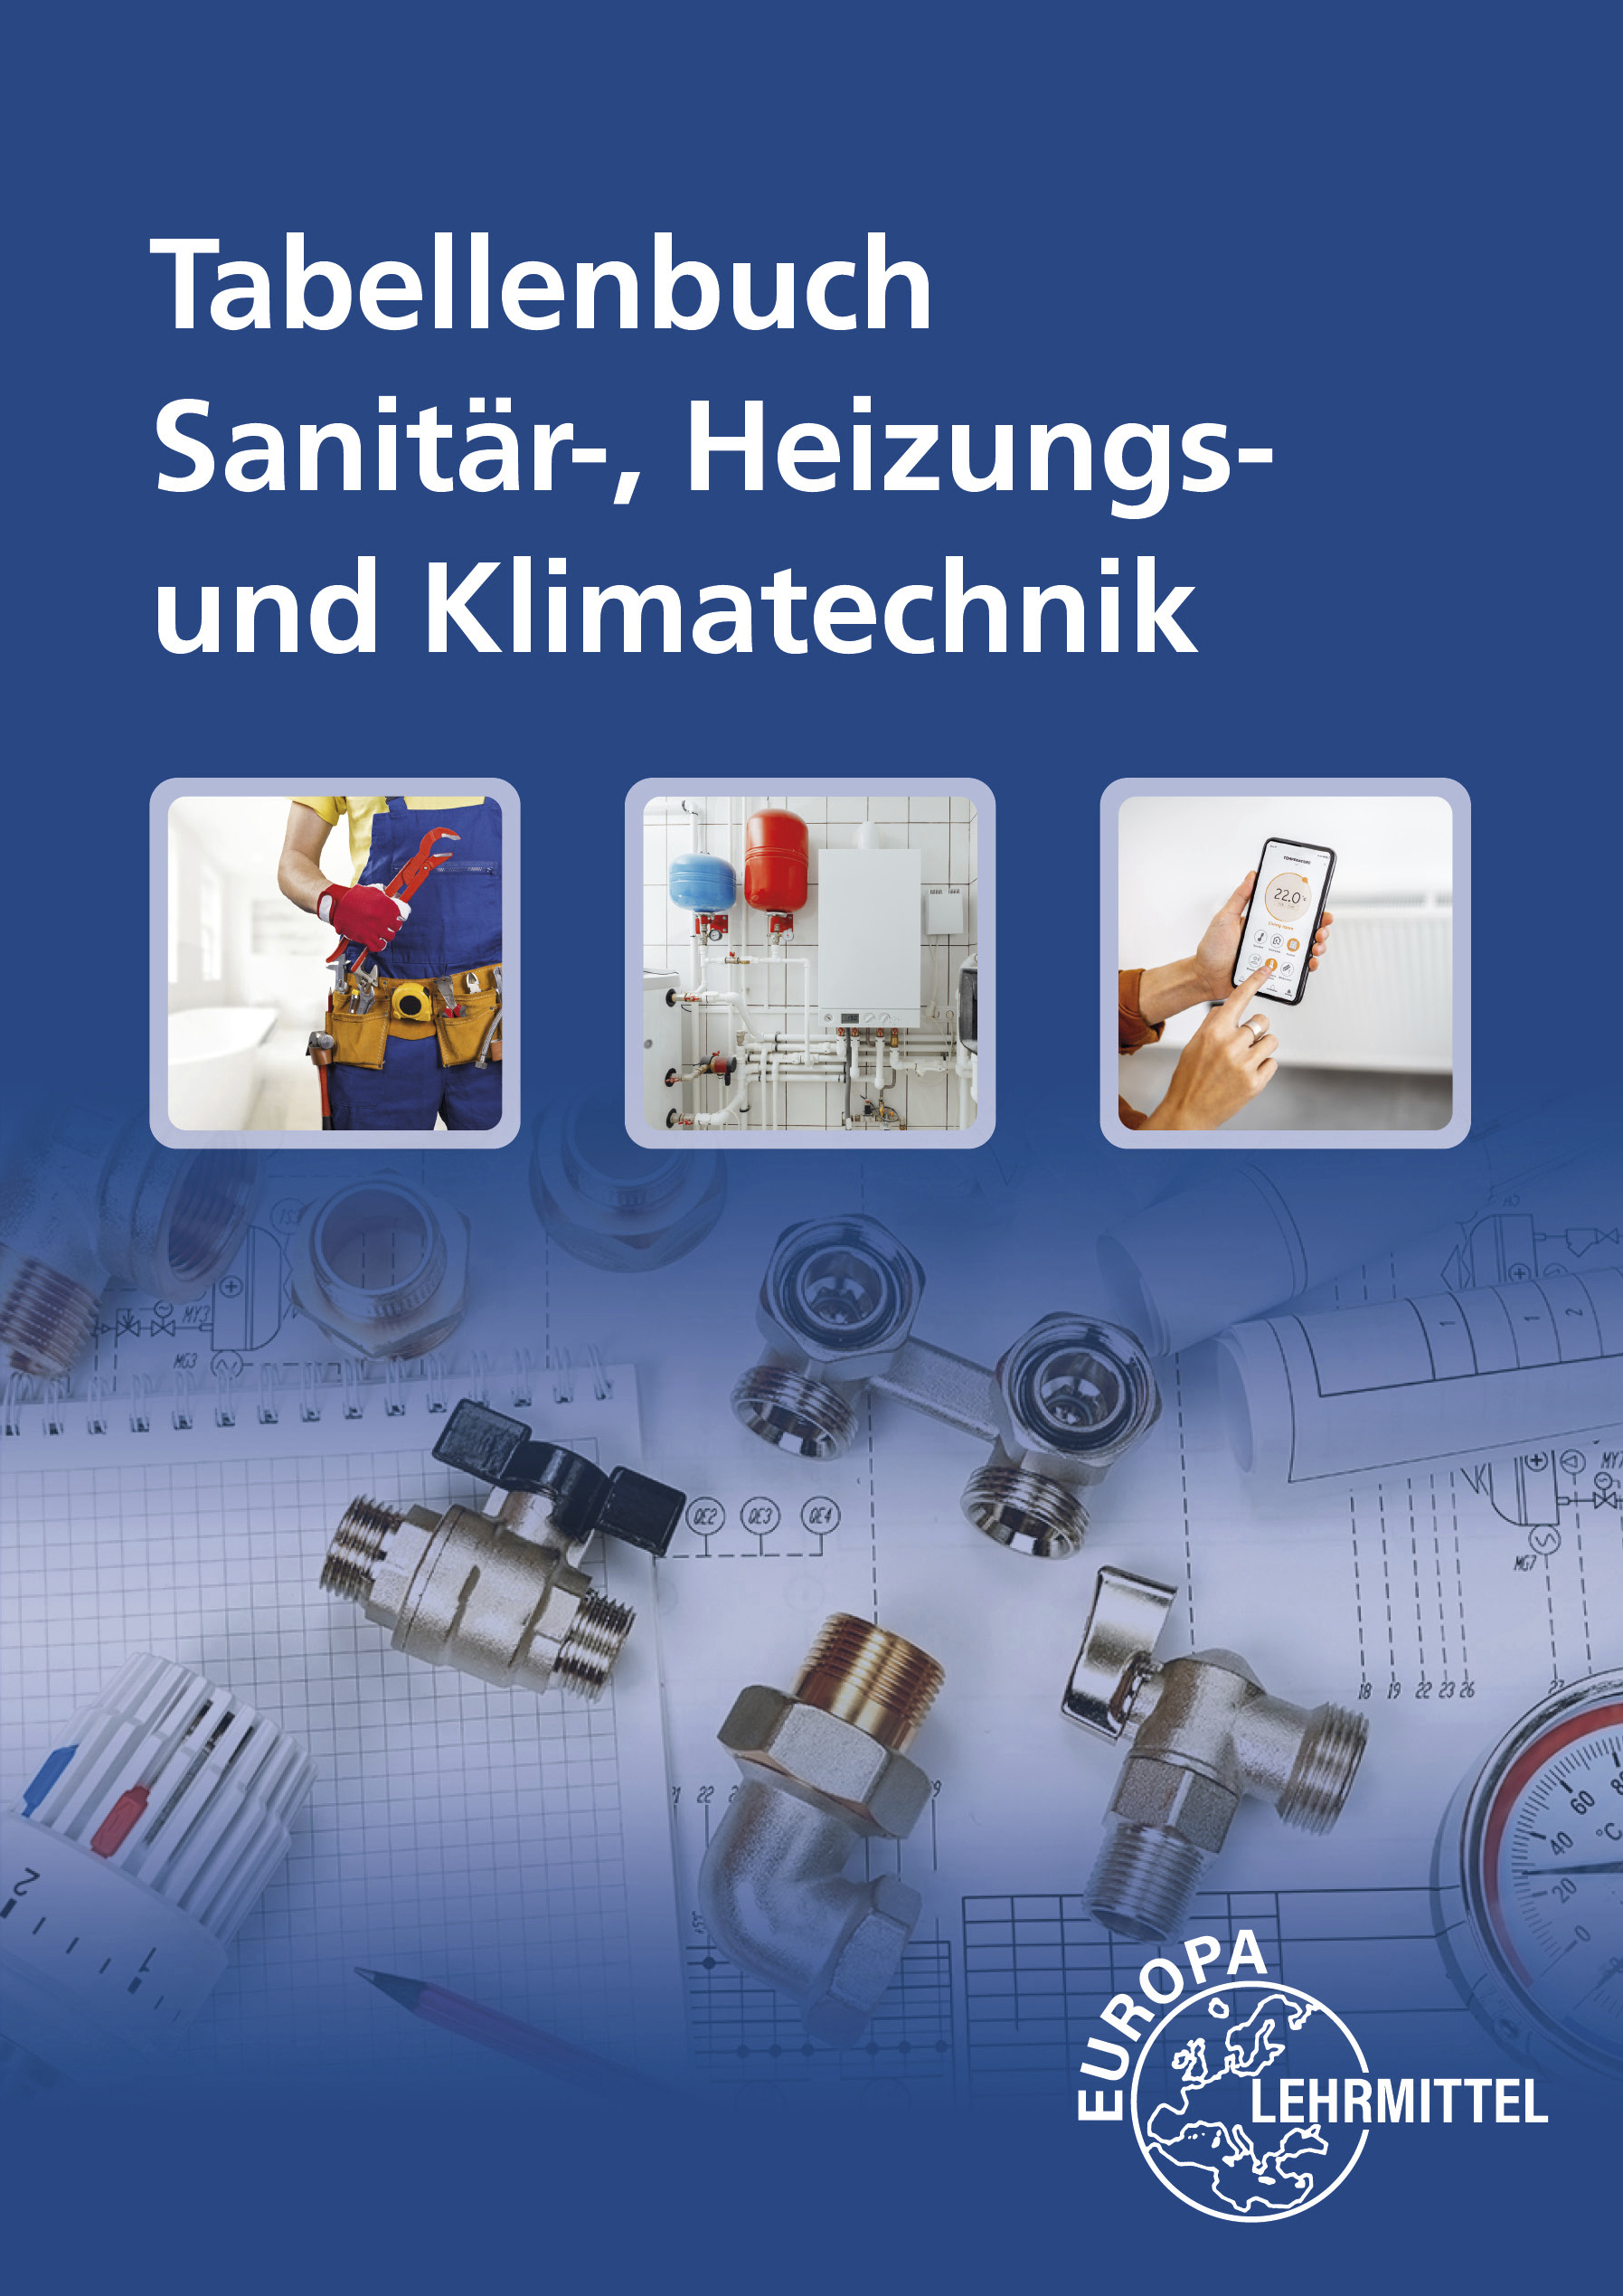 Tabellenbuch Sanitär-, Heizungs- und Klimatechnik mit Formelsammlung